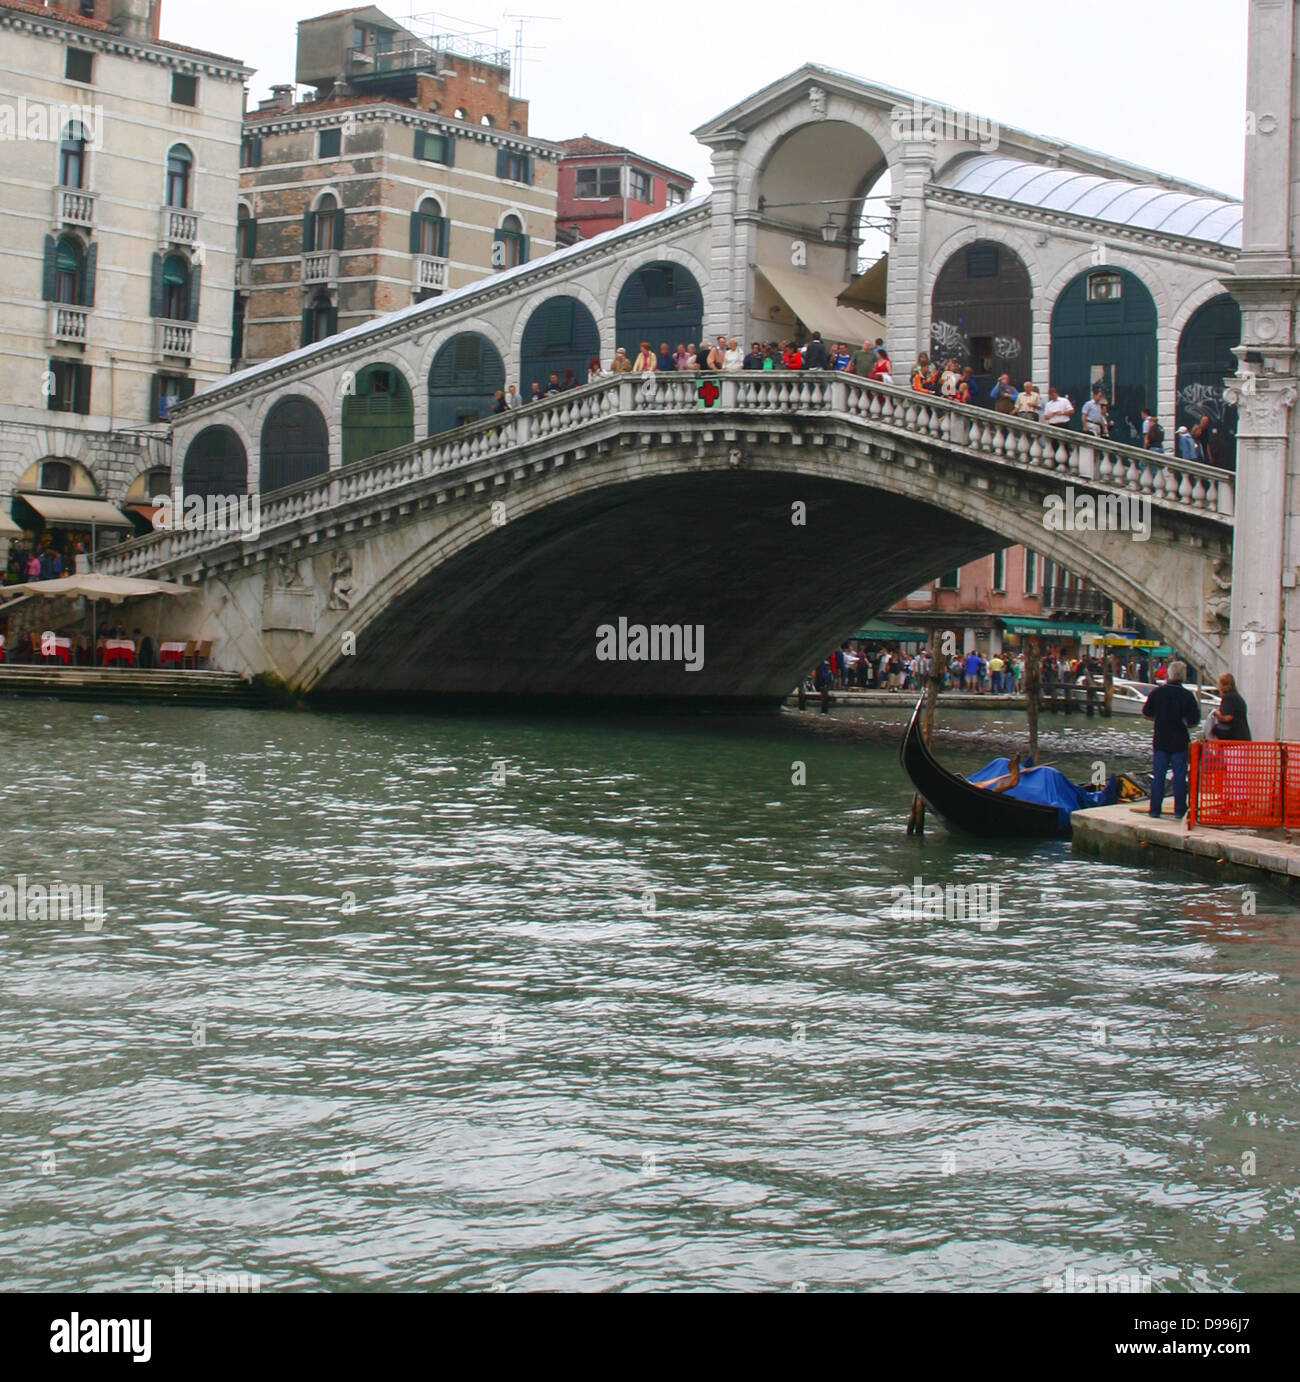 Il Ponte di Rialto (Italiano: Ponte di Rialto) è uno dei quattro ponti che attraversano il Canal Grande a Venezia, Italia. Esso è il più antico ponte sul canale. La presente il ponte di pietra, un singolo span progettata da Antonio da Ponte, è stato finalmente completato nel 1591. Foto Stock